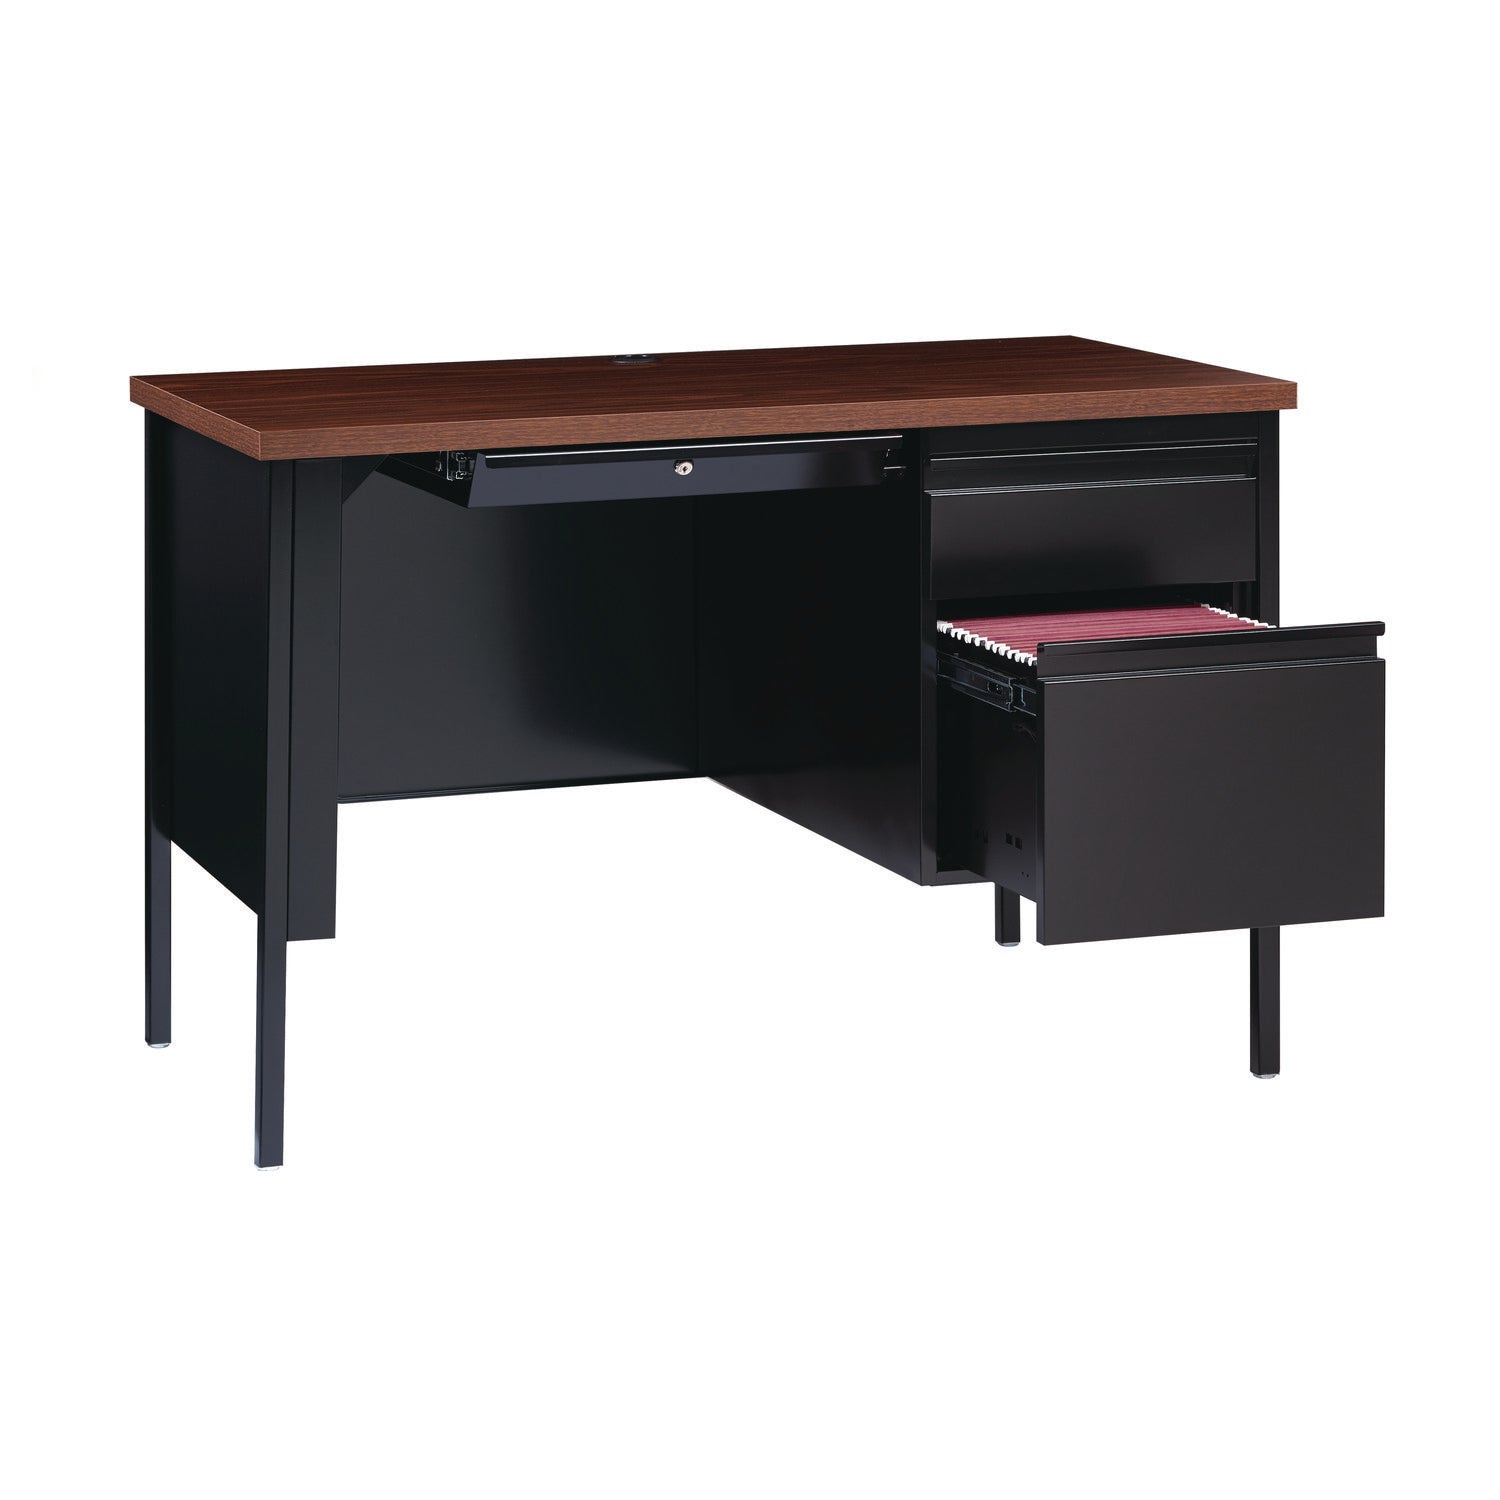 single-pedestal-steel-desk-455-x-24-x-295-mocha-black-black-legs_alehsd4524bm - 6